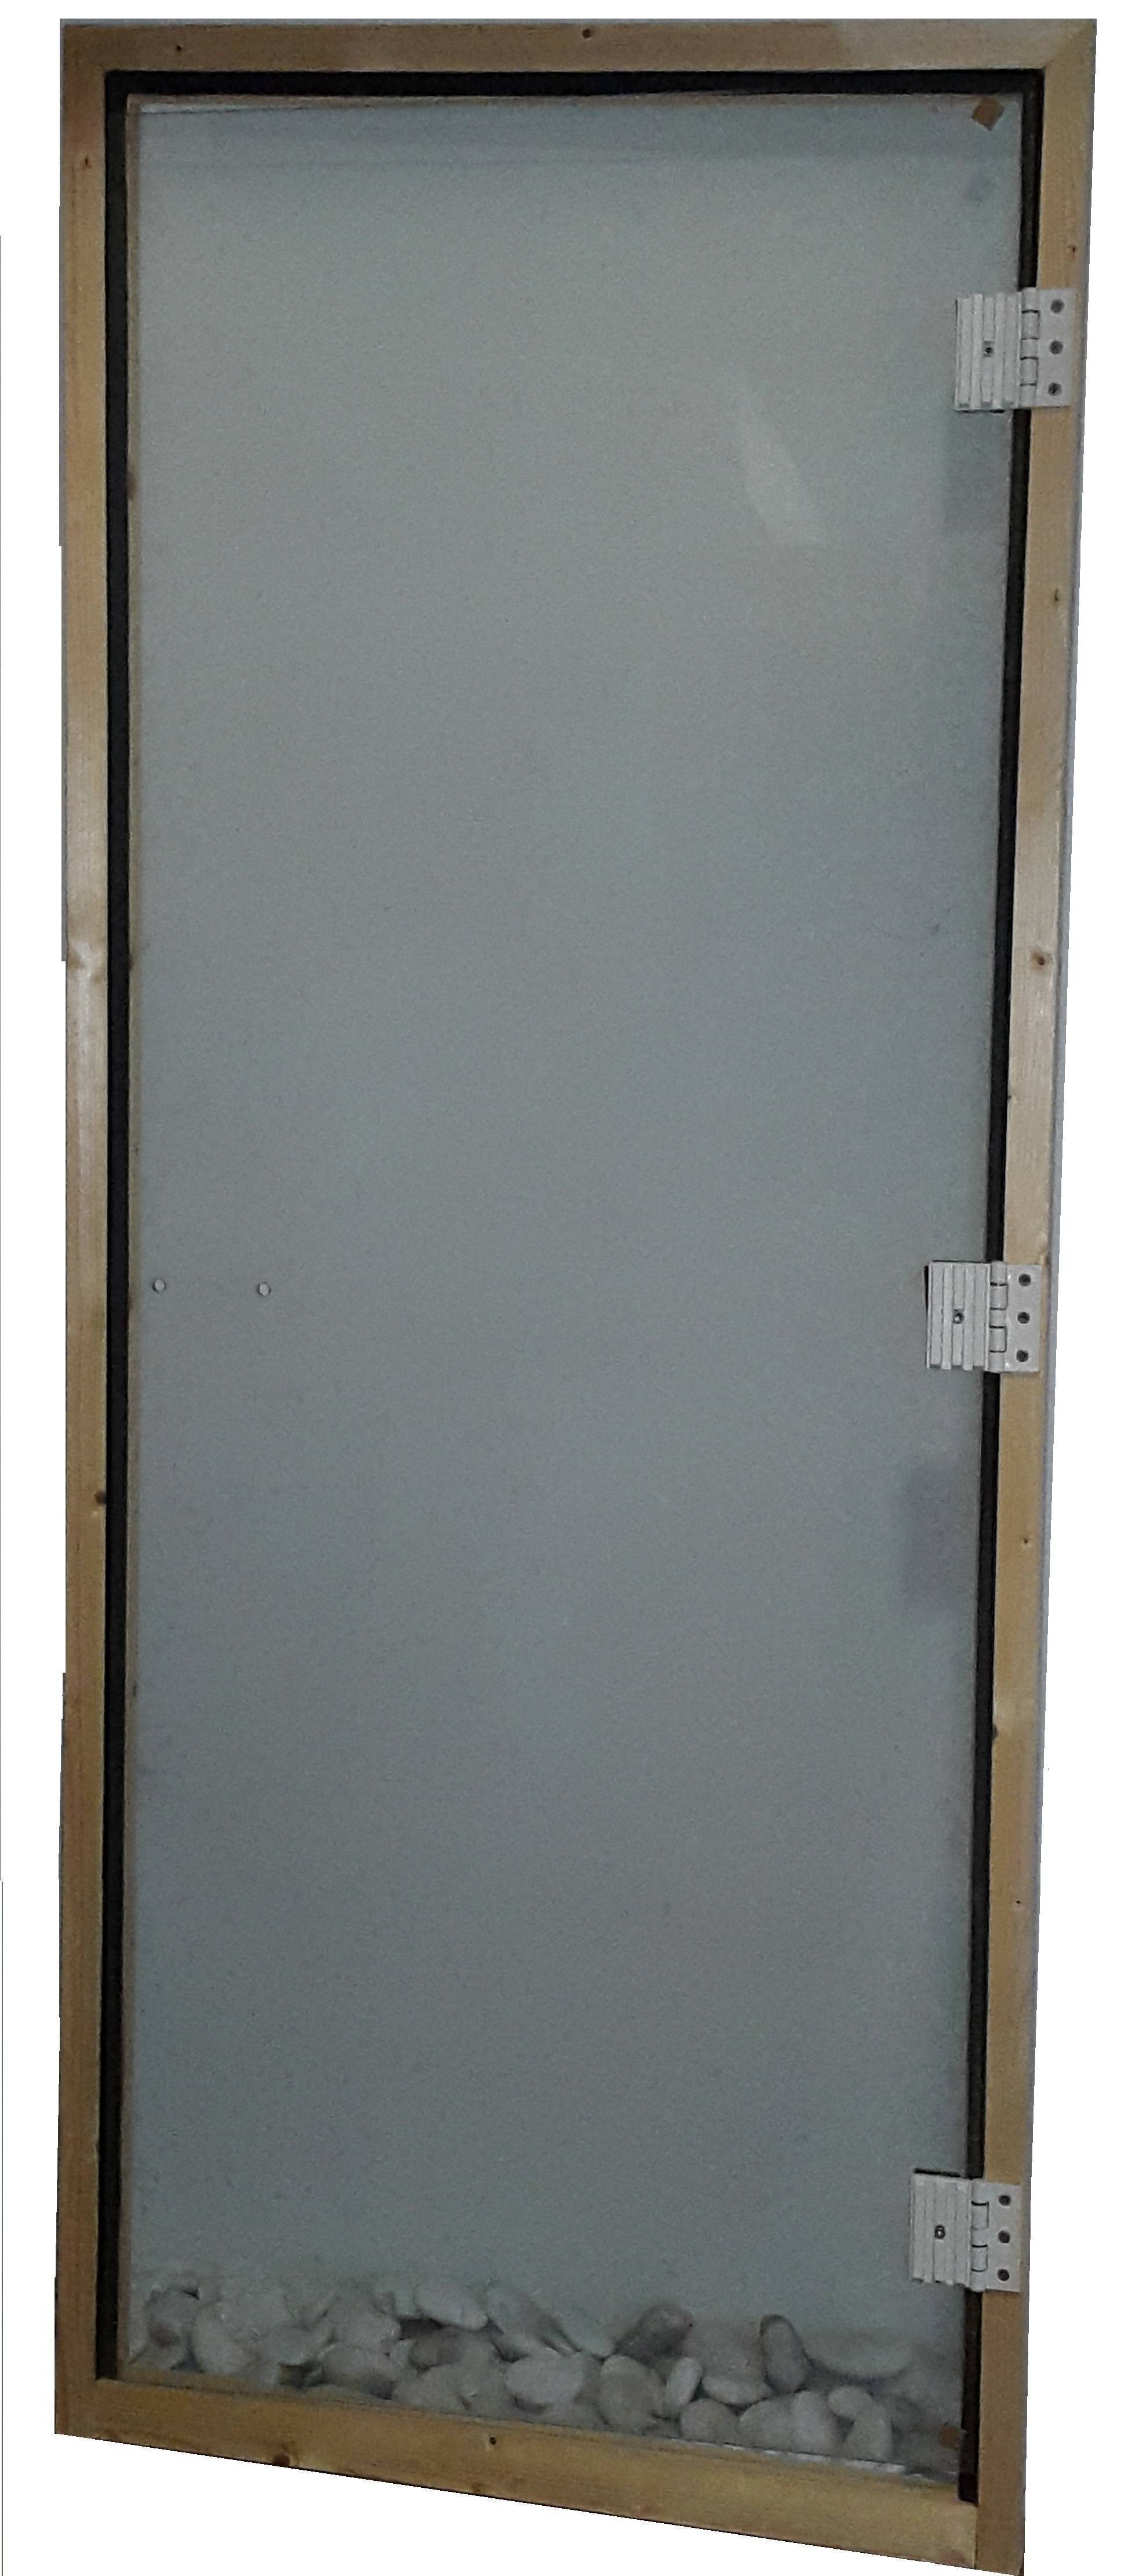 Vrata za saune: Vrata za saune 76x186 transparentna (  )